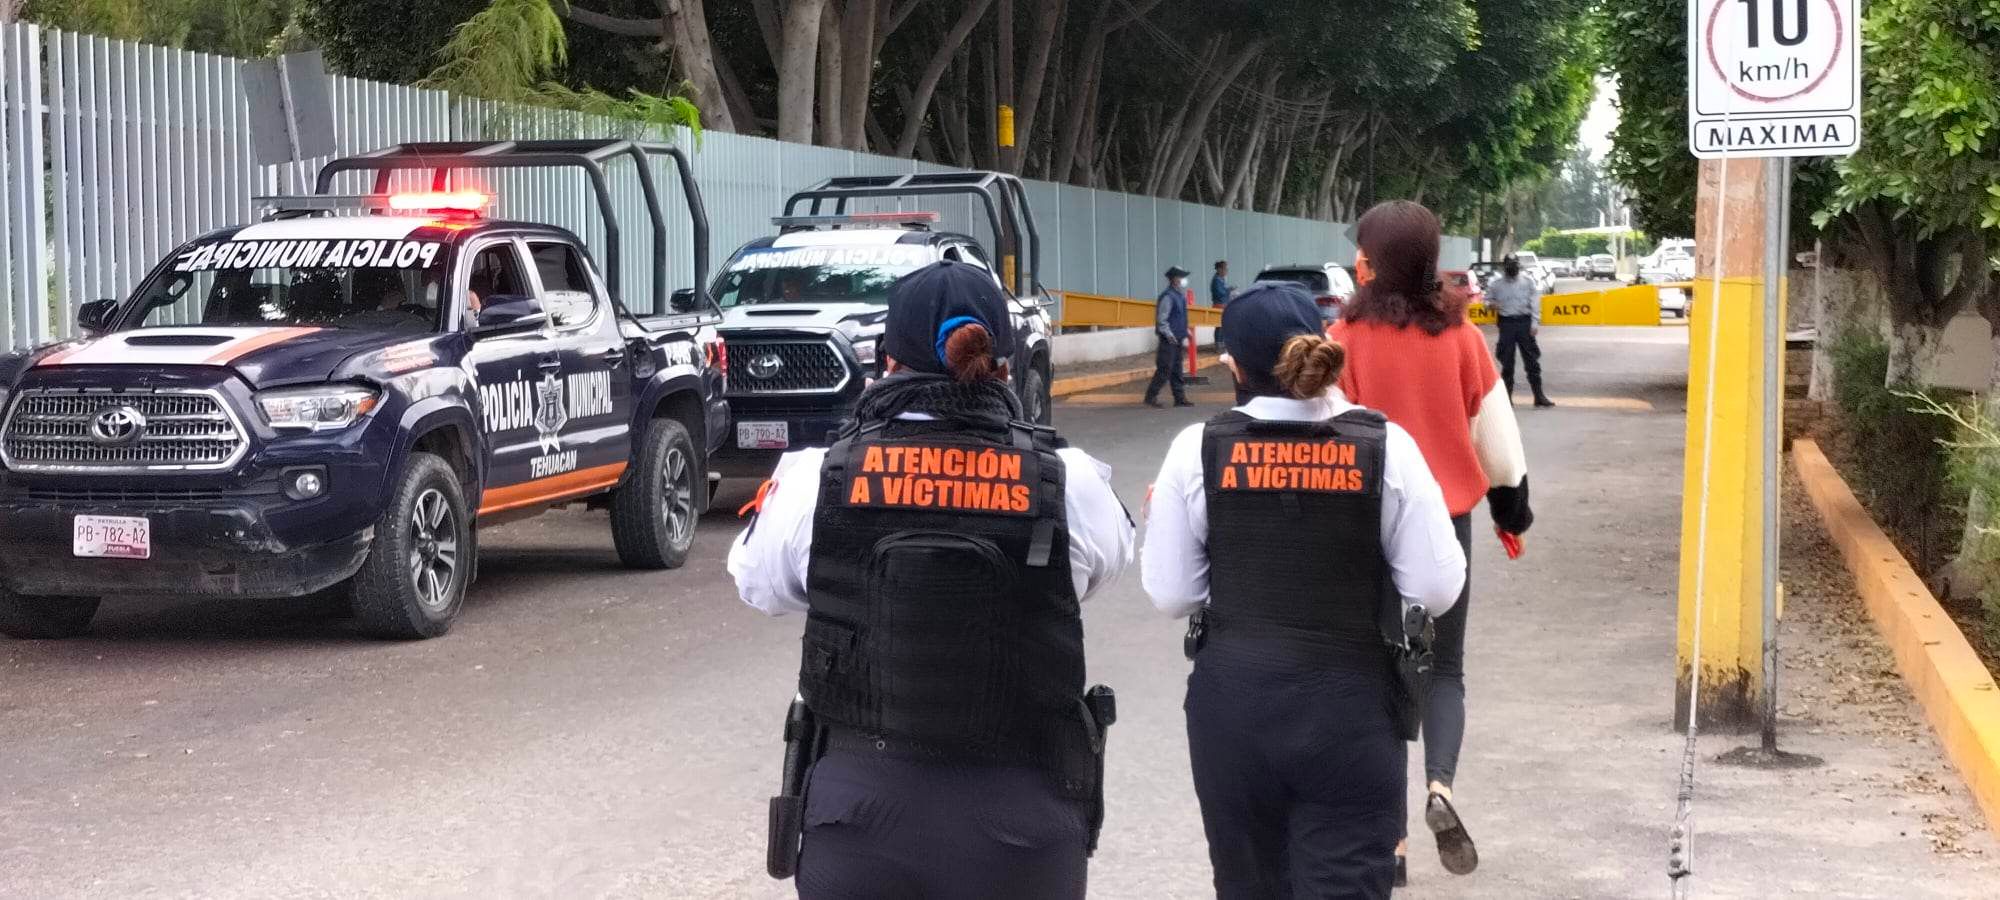 Diario, al menos 4 mujeres denuncian ser víctimas de violencia en Tehuacán